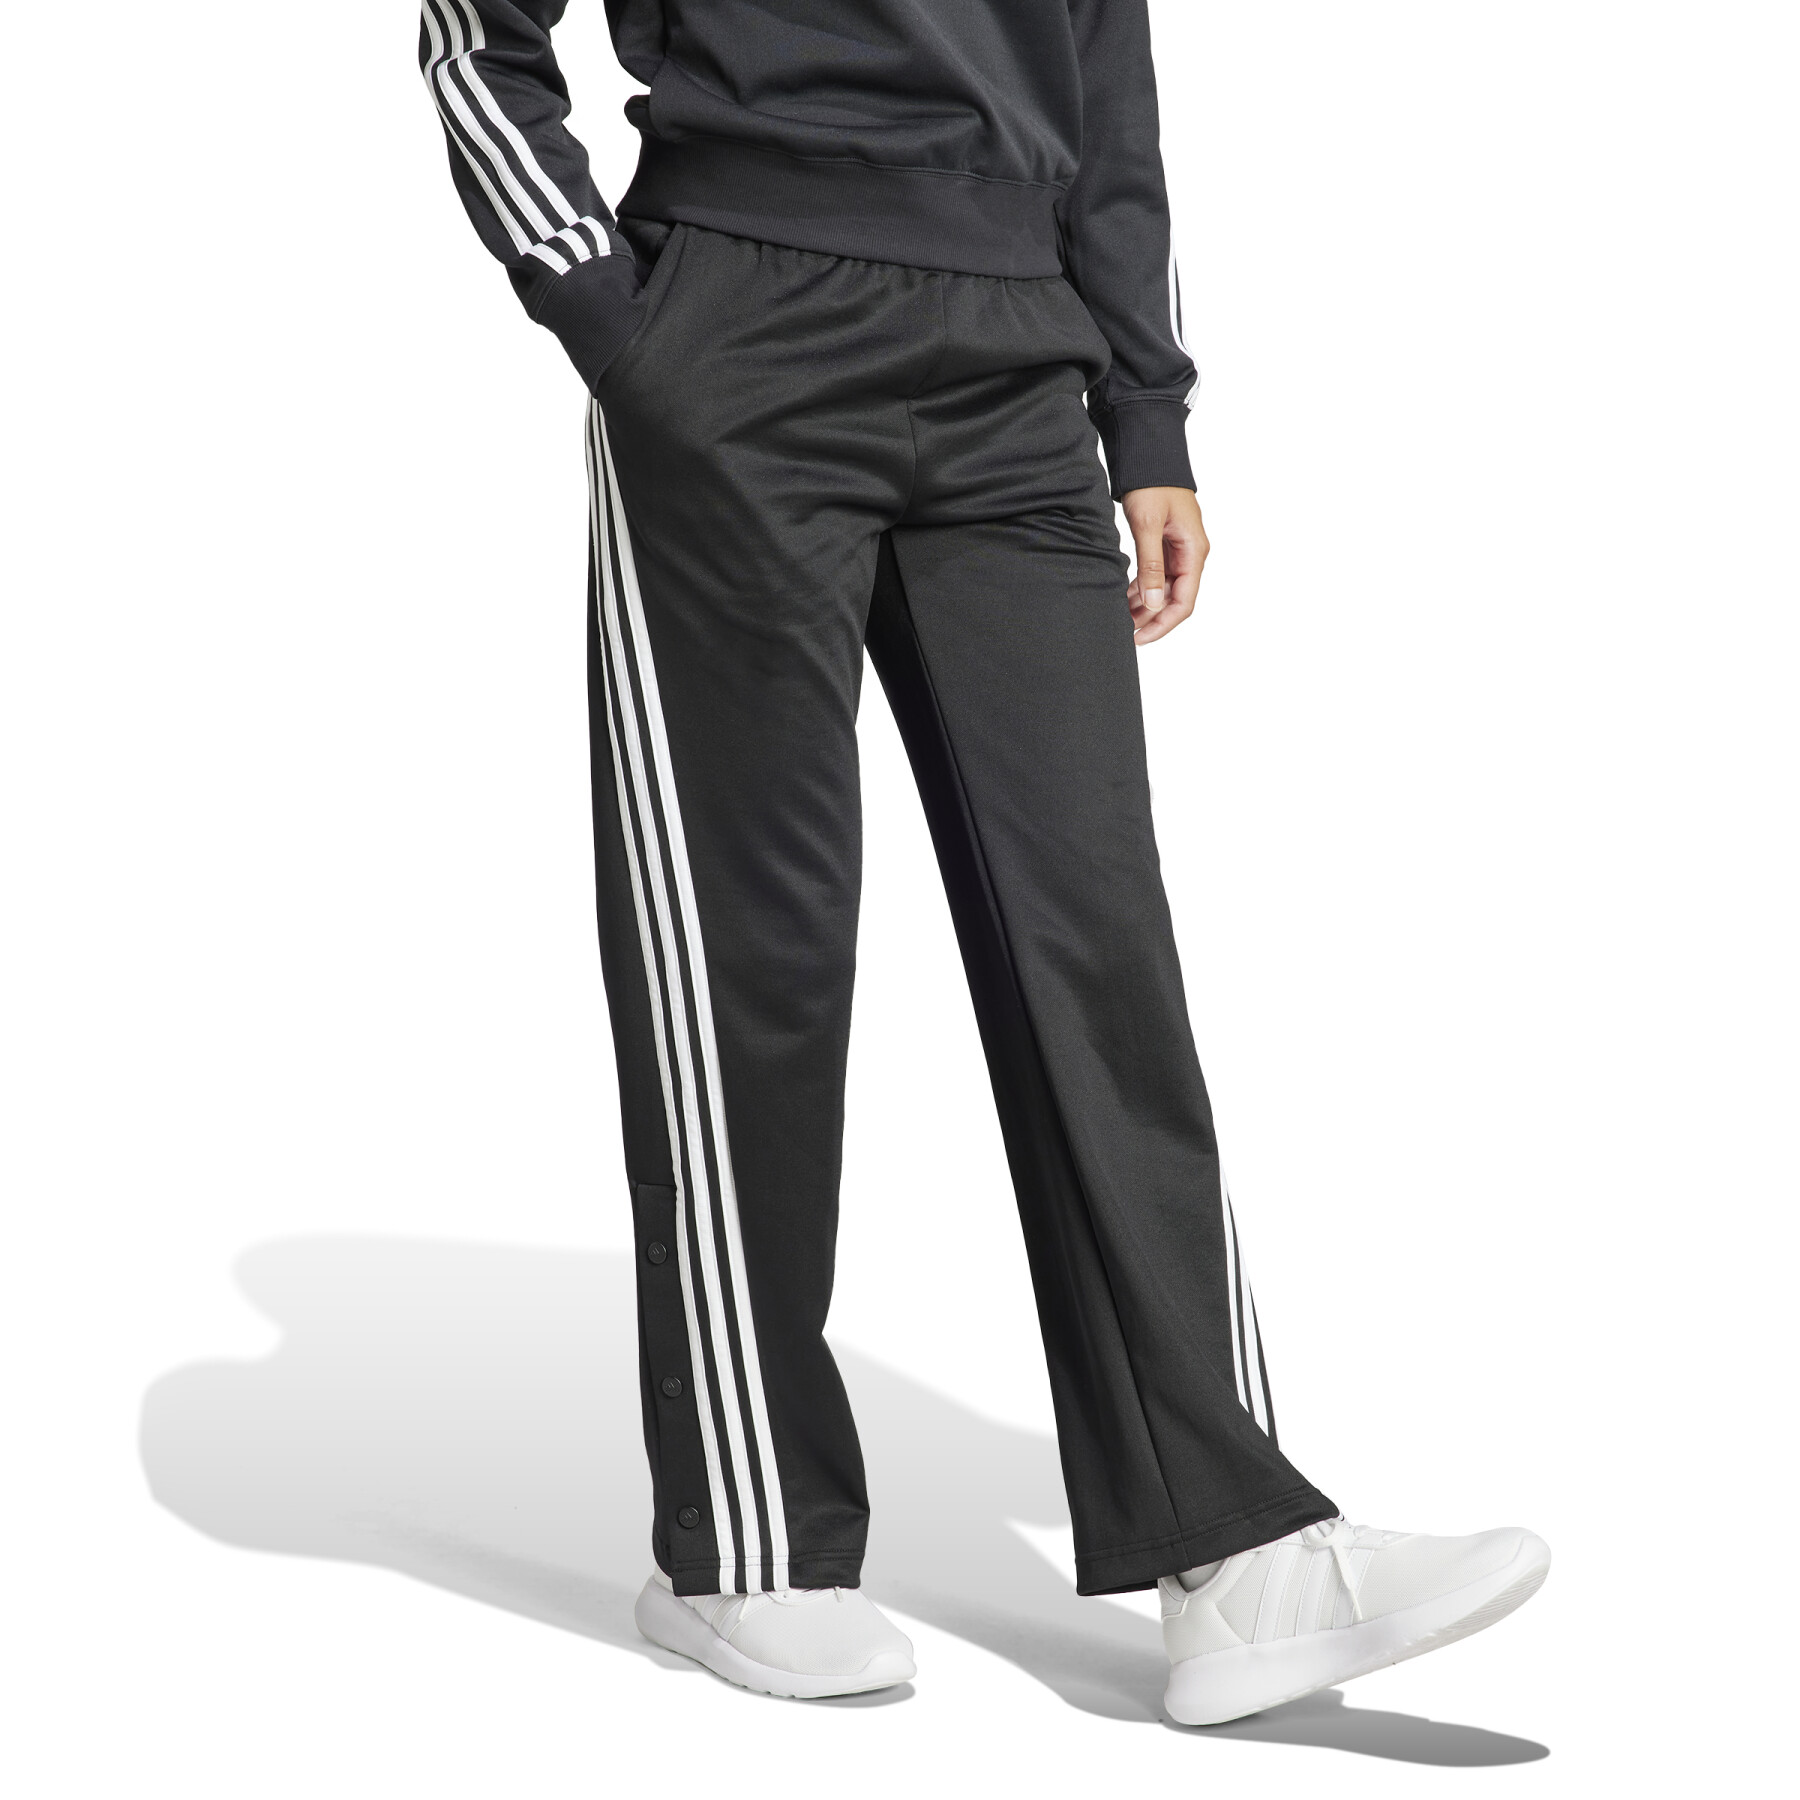 Jogginghose mit 3 Streifen, Damen adidas Iconic Warpping